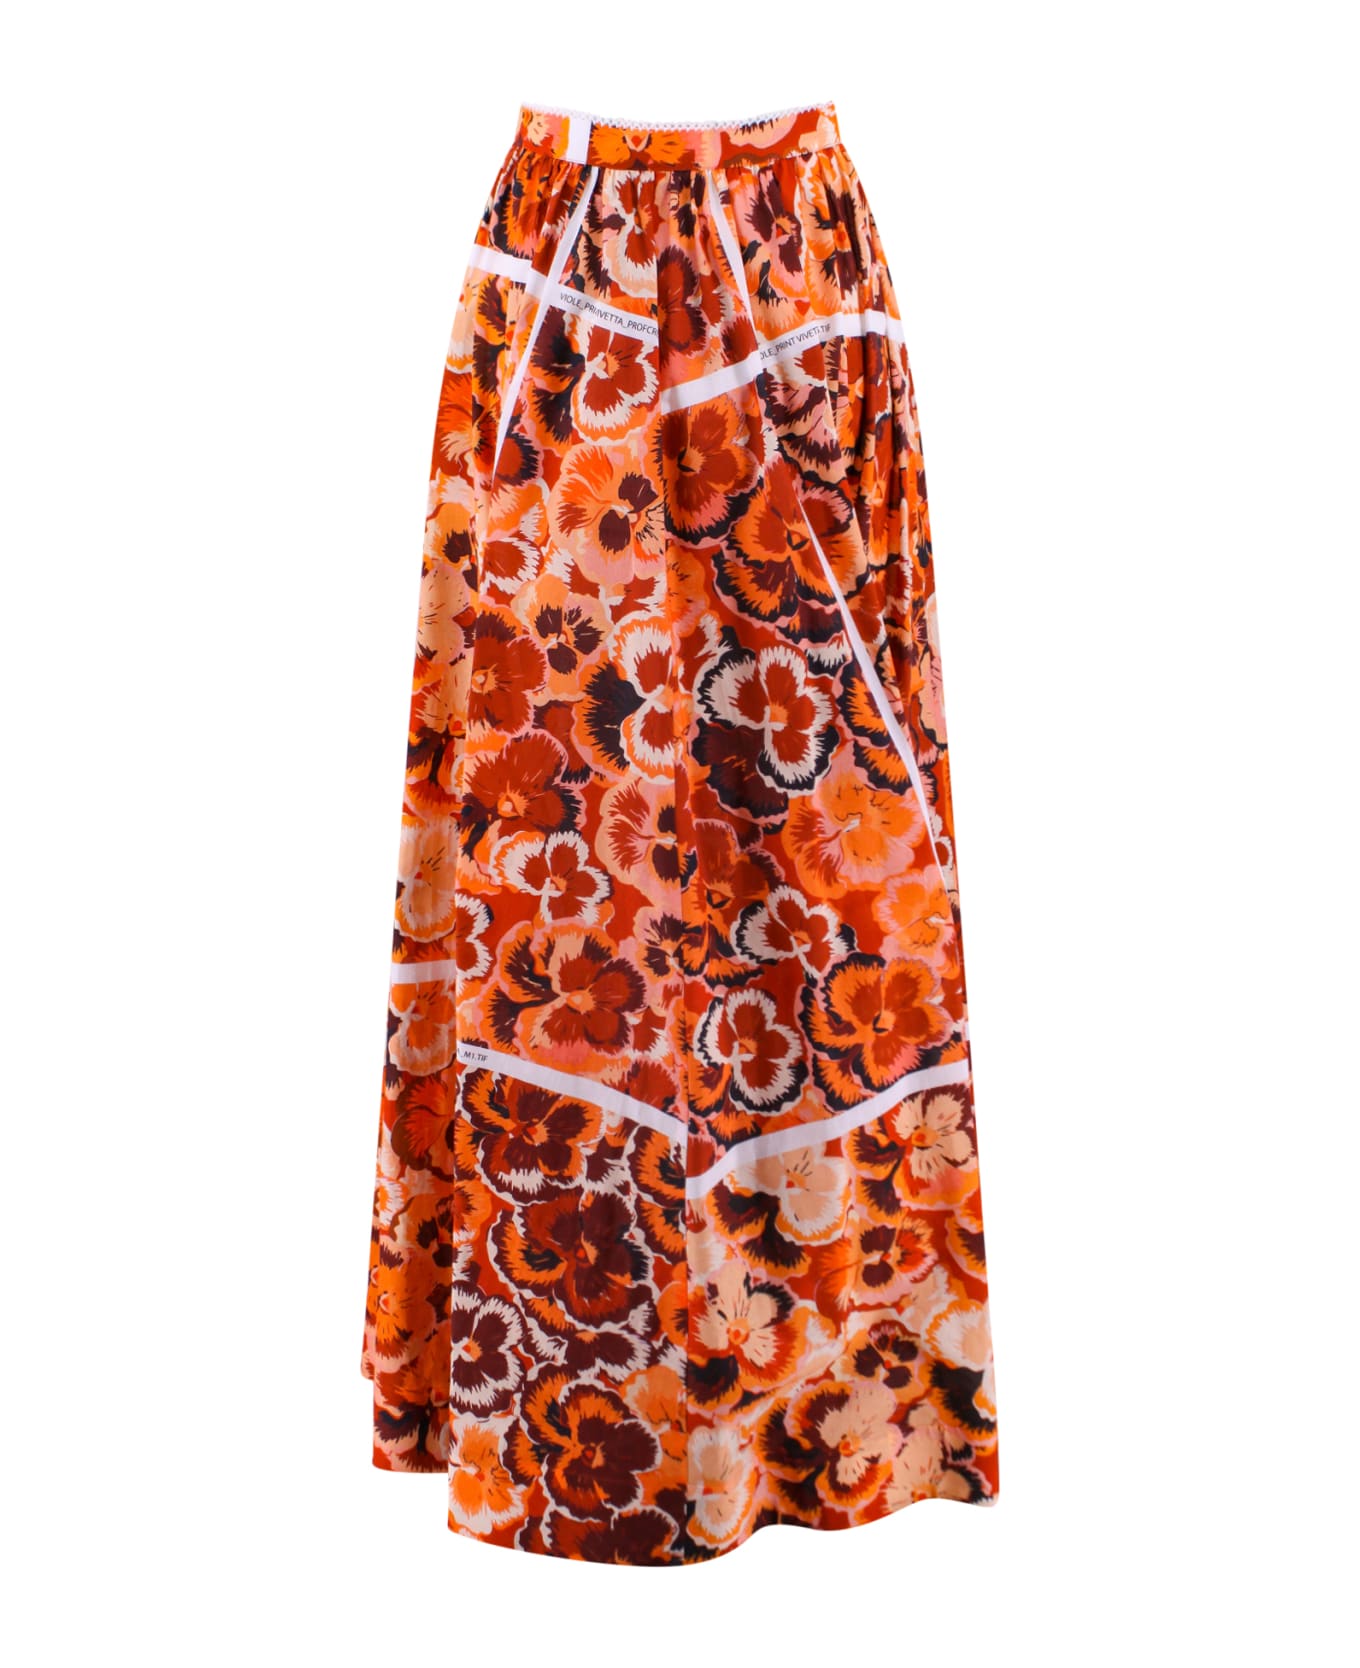 Vivetta Skirt - Orange スカート